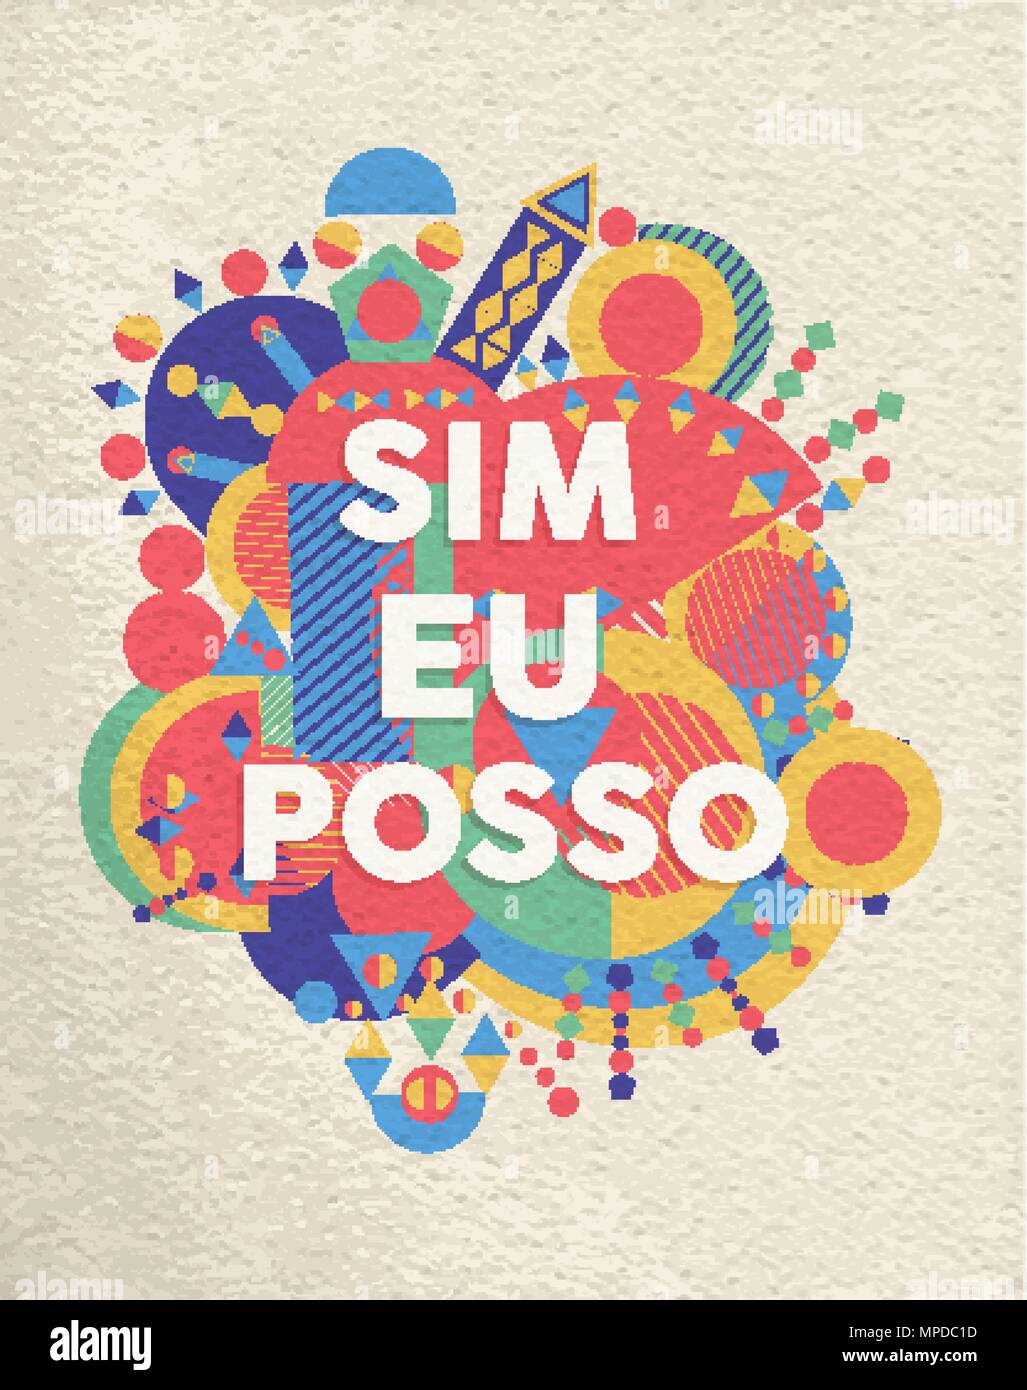 Oui je peux poster typographie colorée en langue portugaise. La motivation d'inspiration design devis avec papier texture background. Vecteur EPS10. Illustration de Vecteur